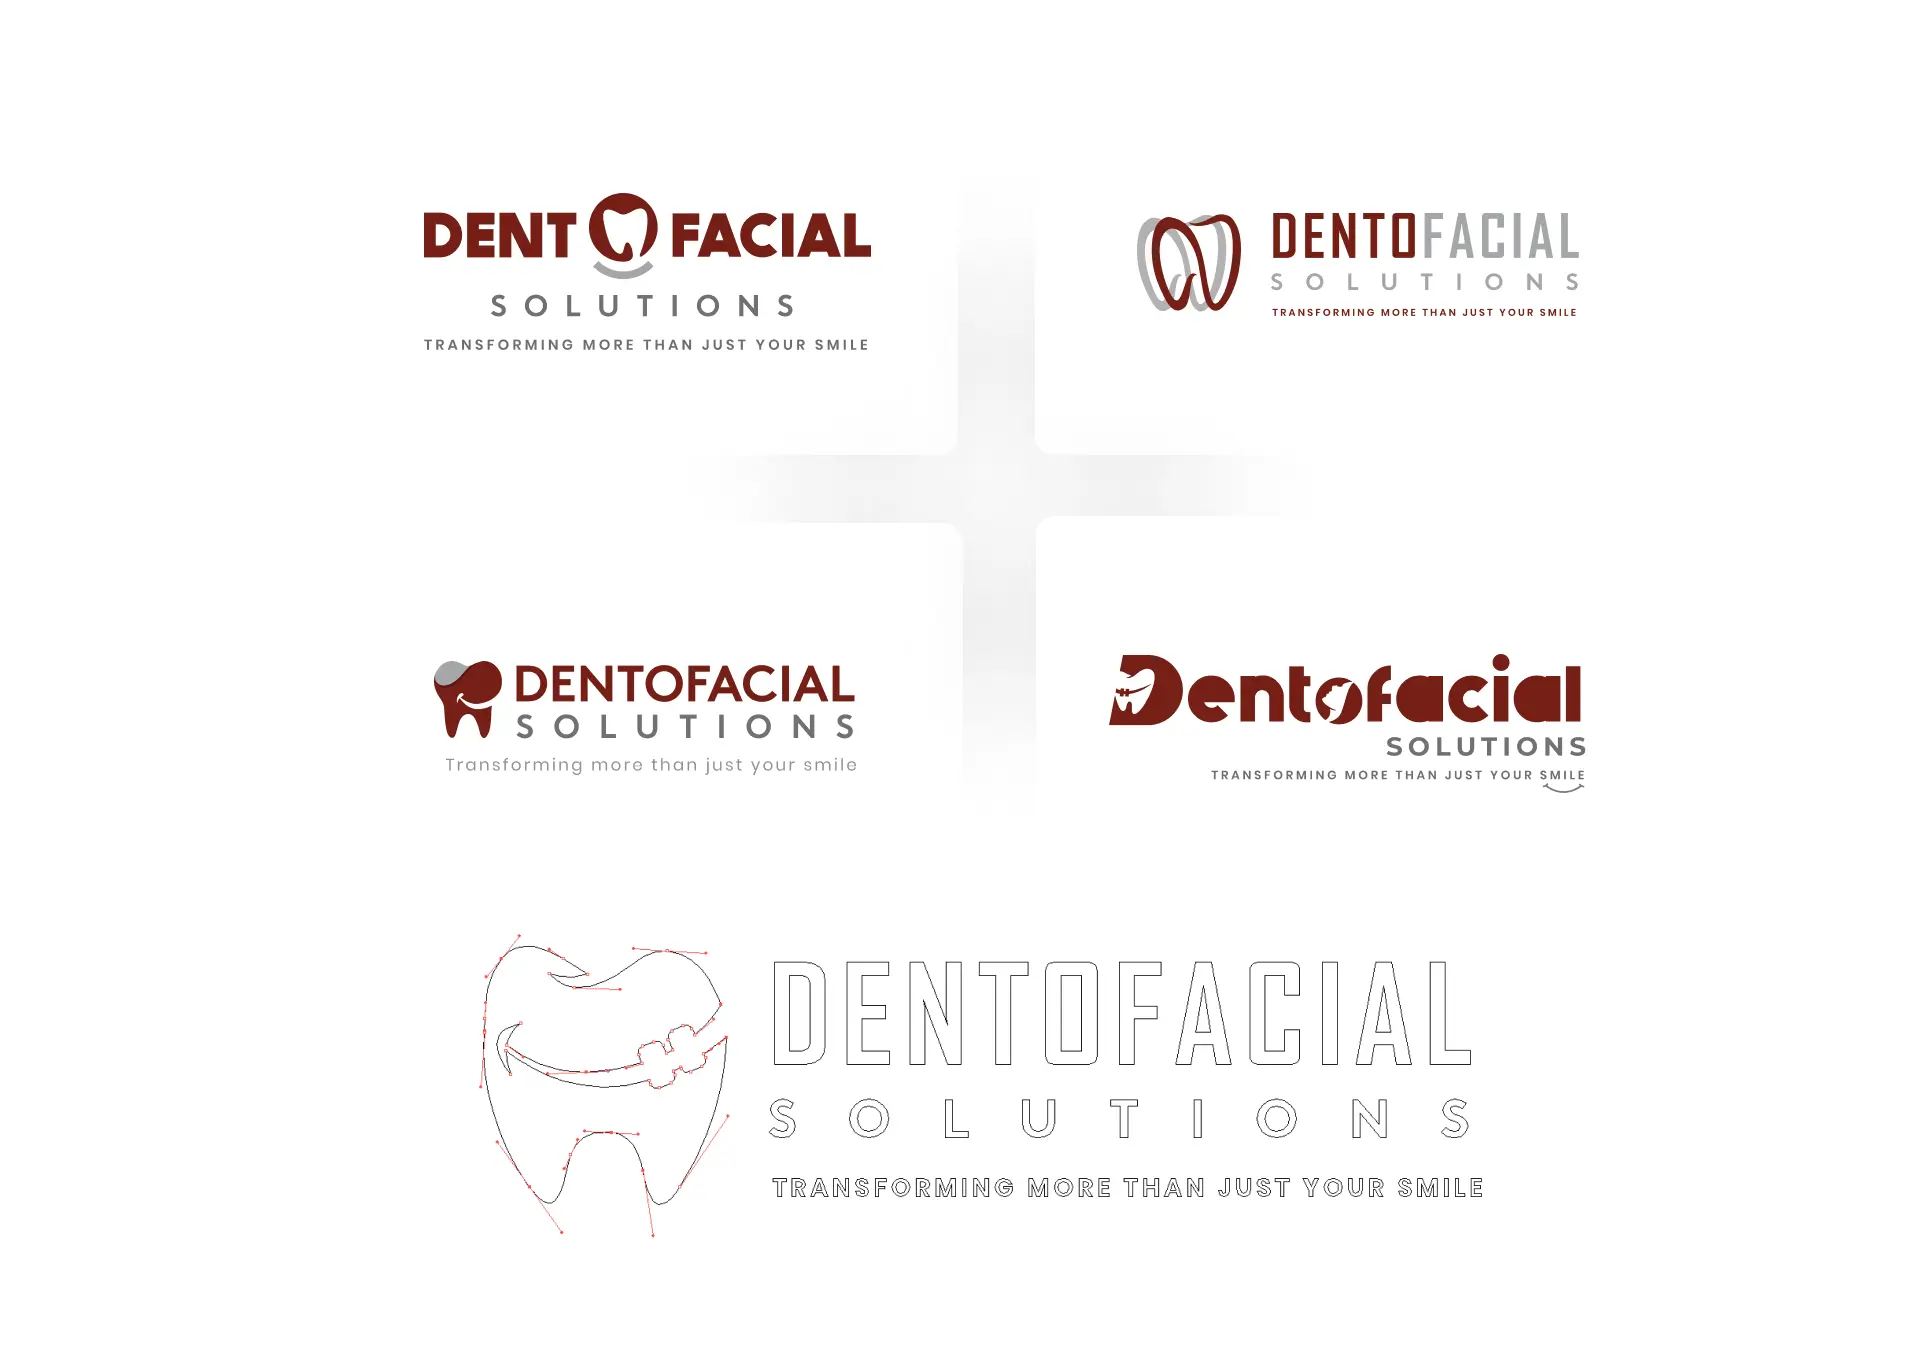 Initial concepts for Dentofacial